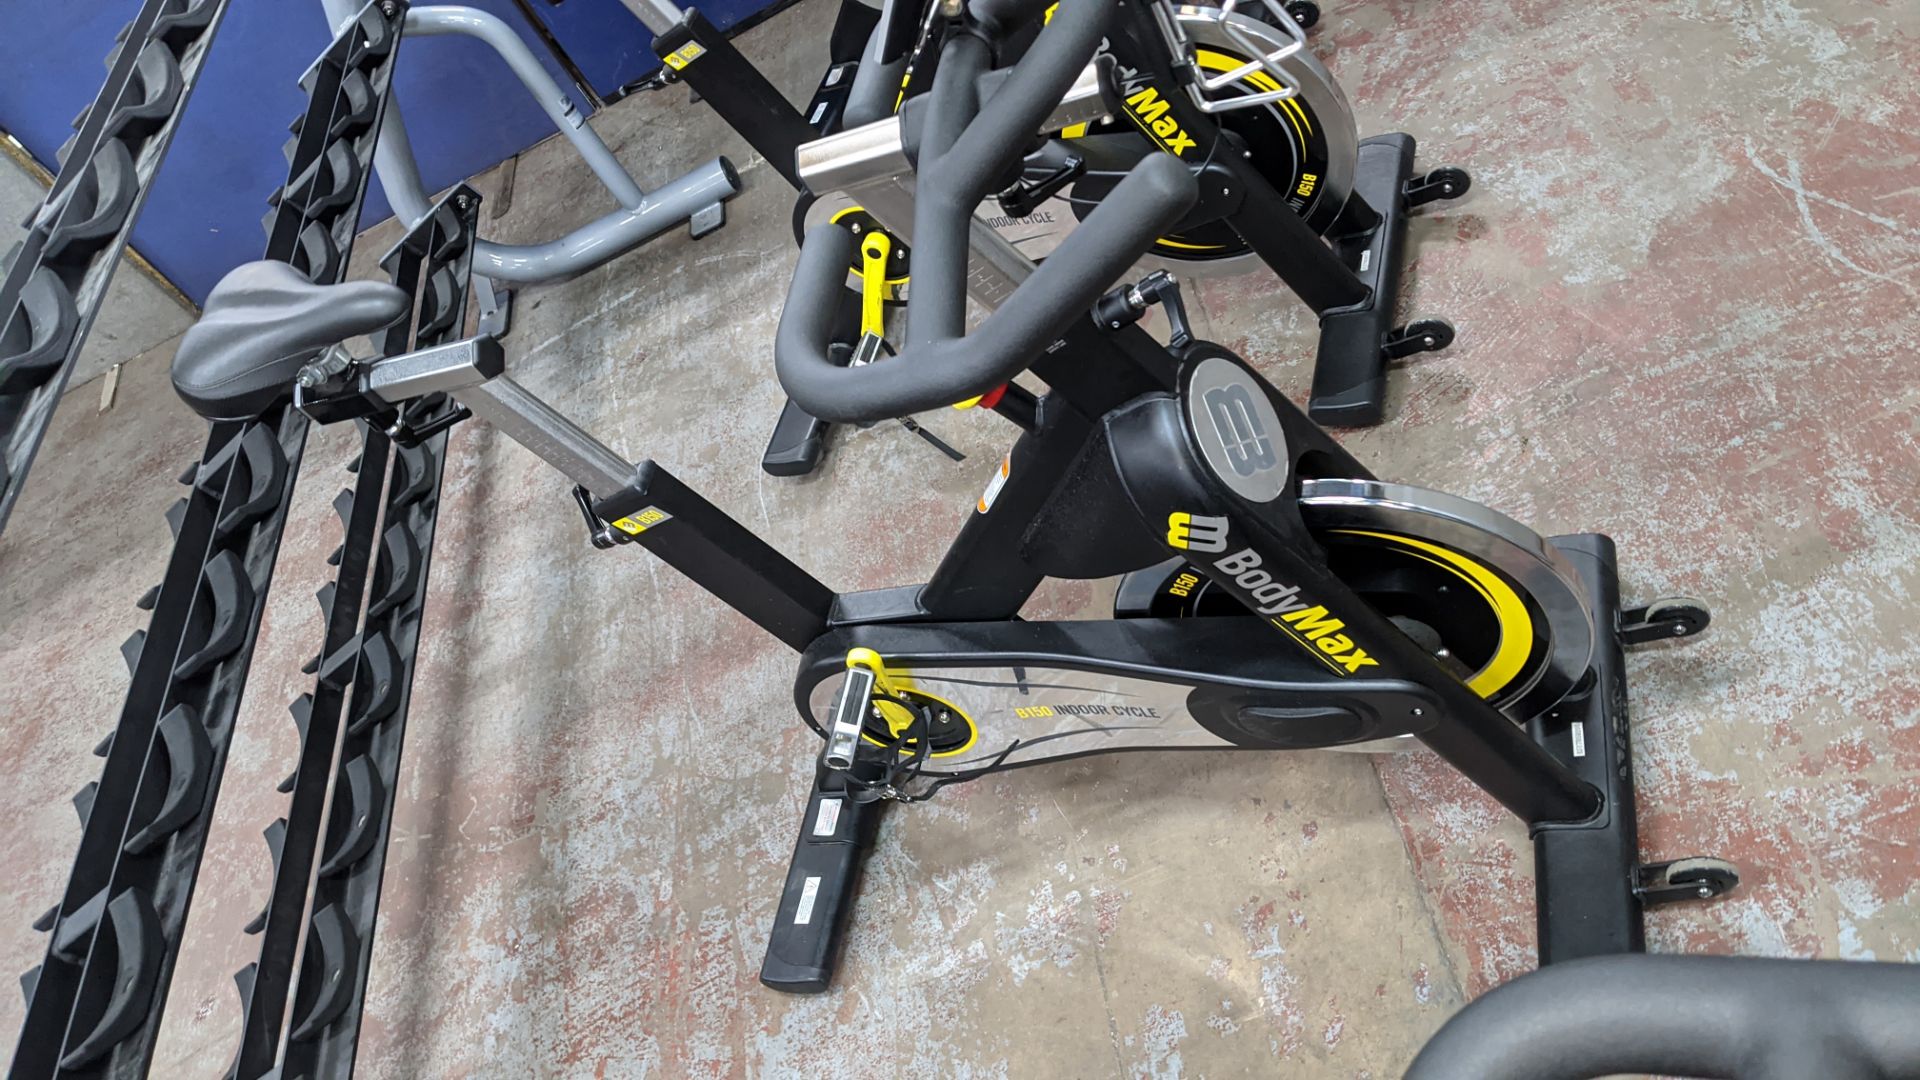 BodyMax model B150 indoor exercise bike. - Image 5 of 11